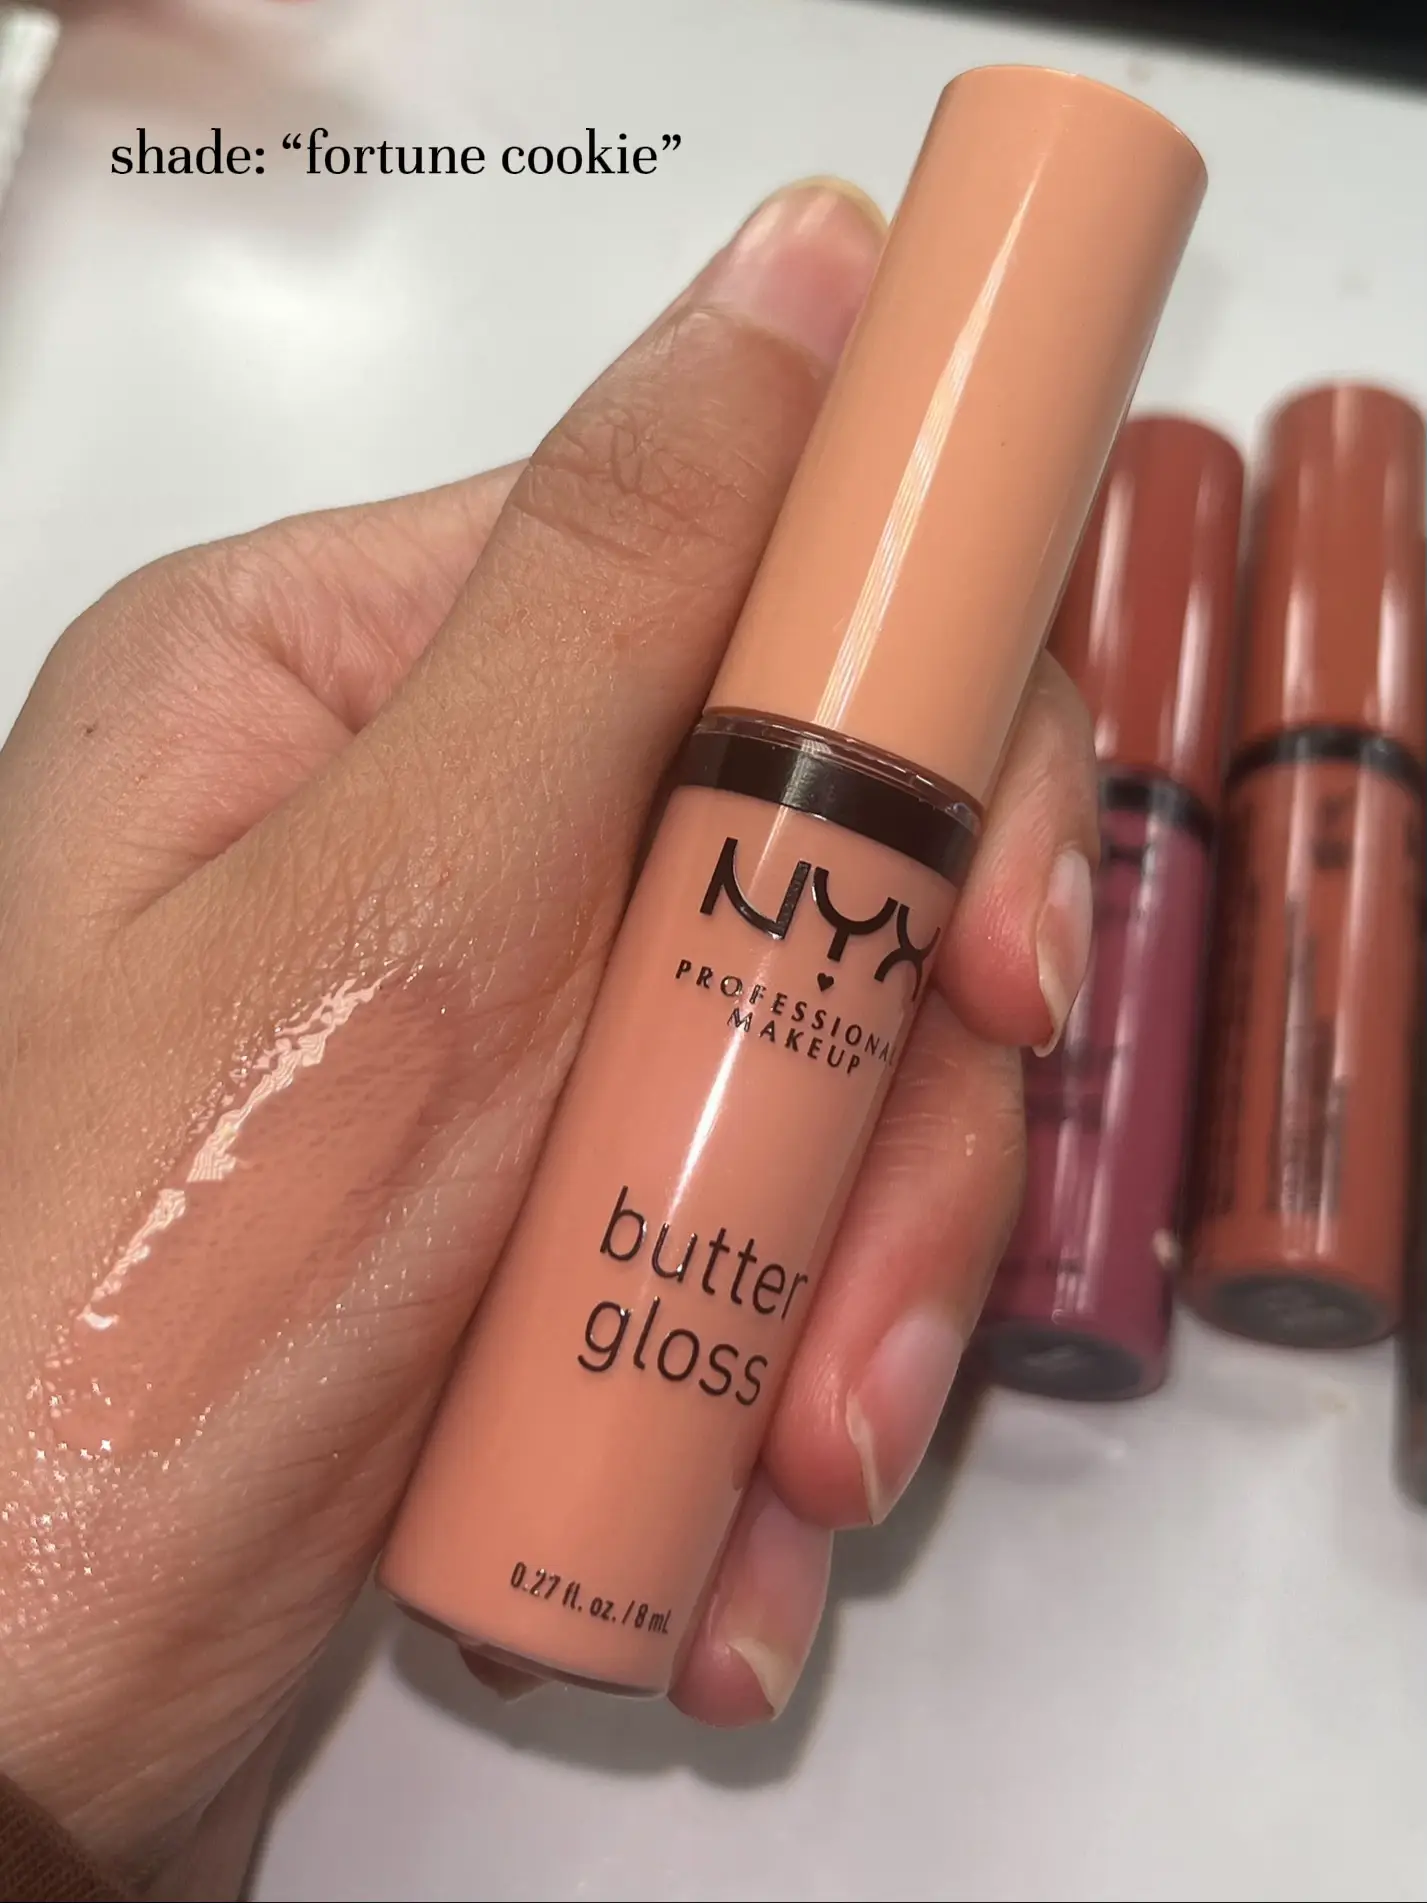 Nyx Professional Makeup Butter Lip Gloss - 40 Apple Crisp - 0.27